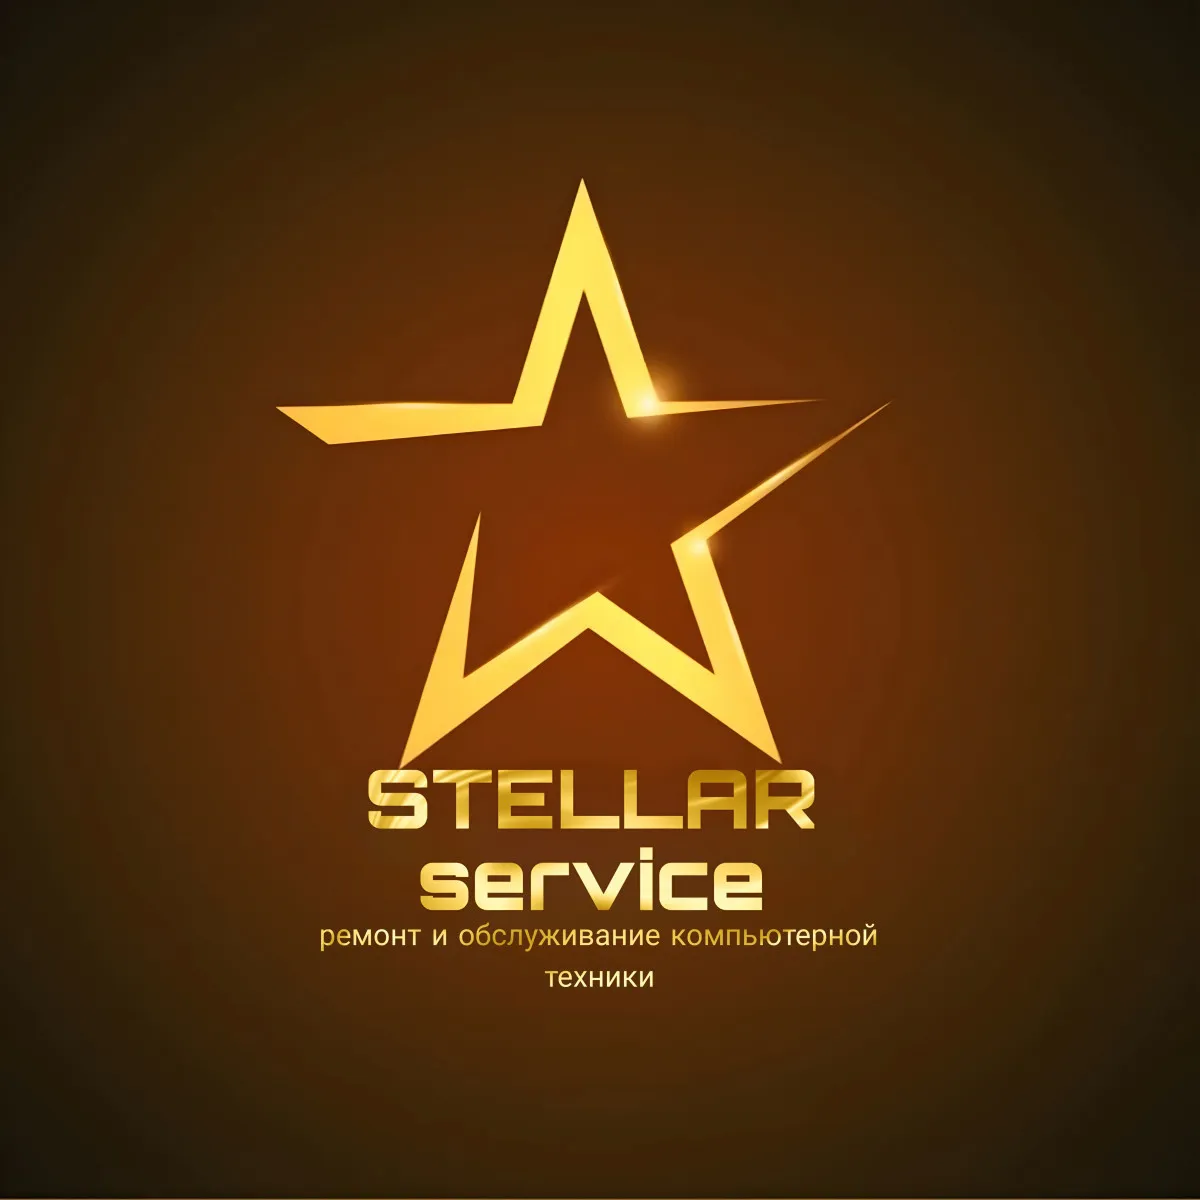 Stellar Servis#1